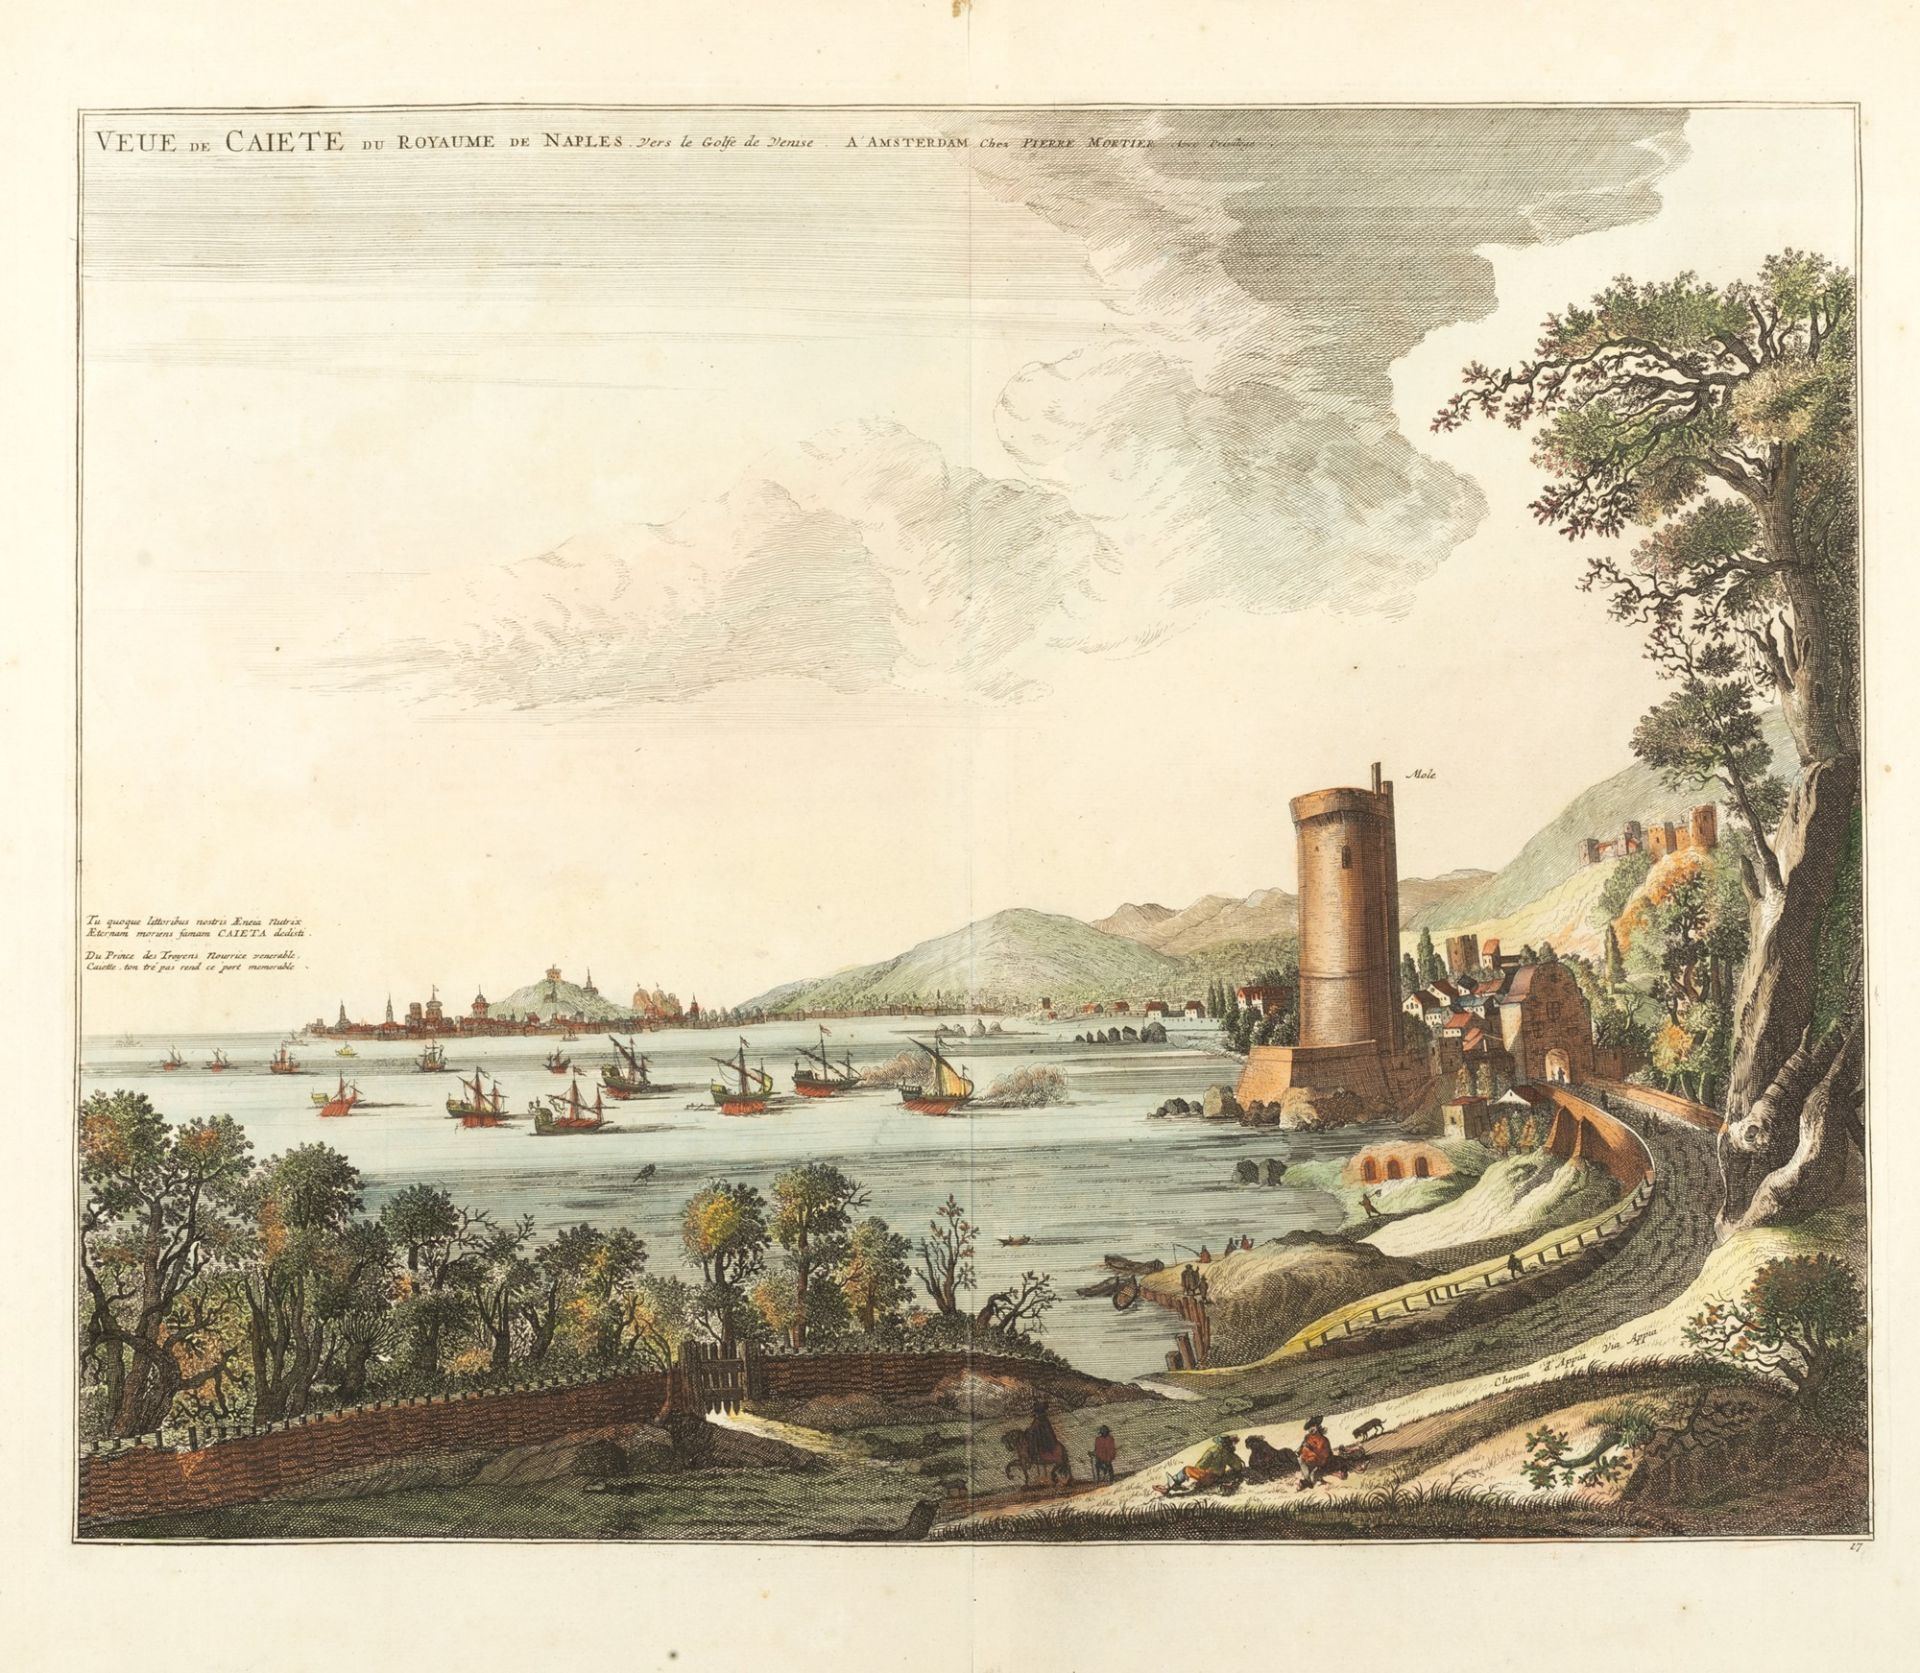 Incisioni - Gaeta - Mortier, Pierre - Veue de Caiete du Royaume de Naples towards the Golfe de Venis